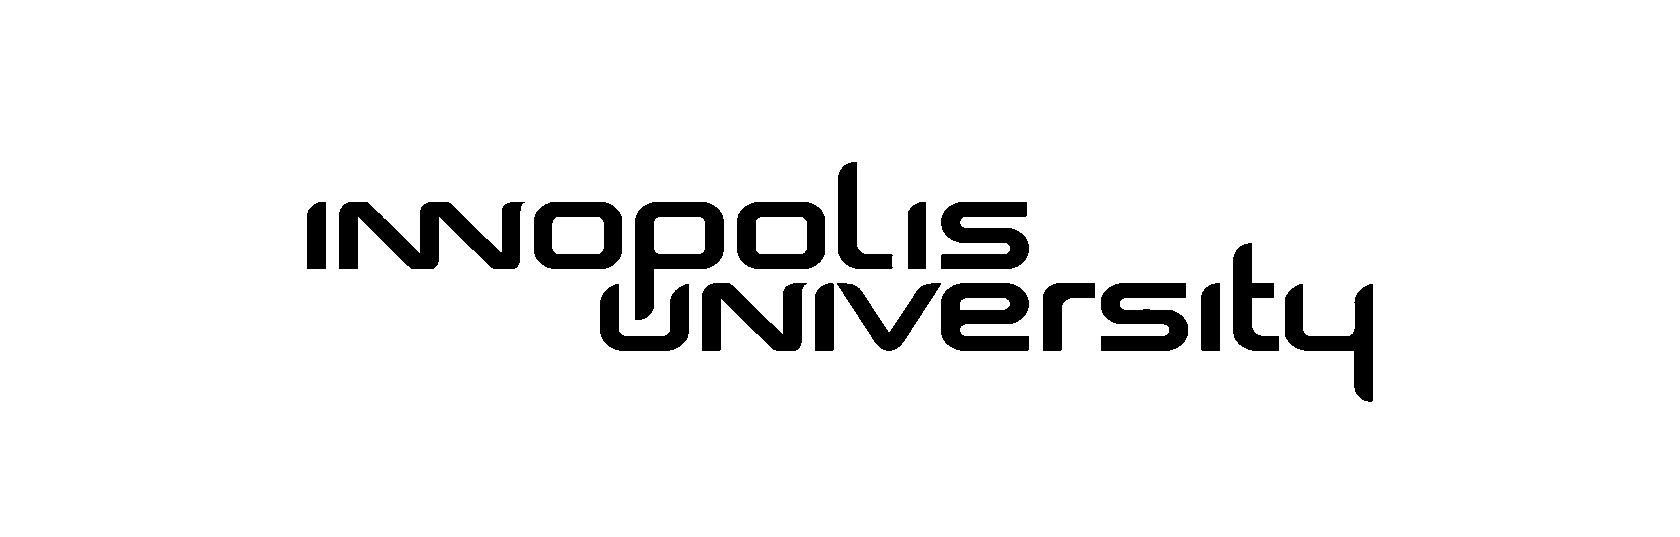 Центр развития карьеры Университета Иннополис